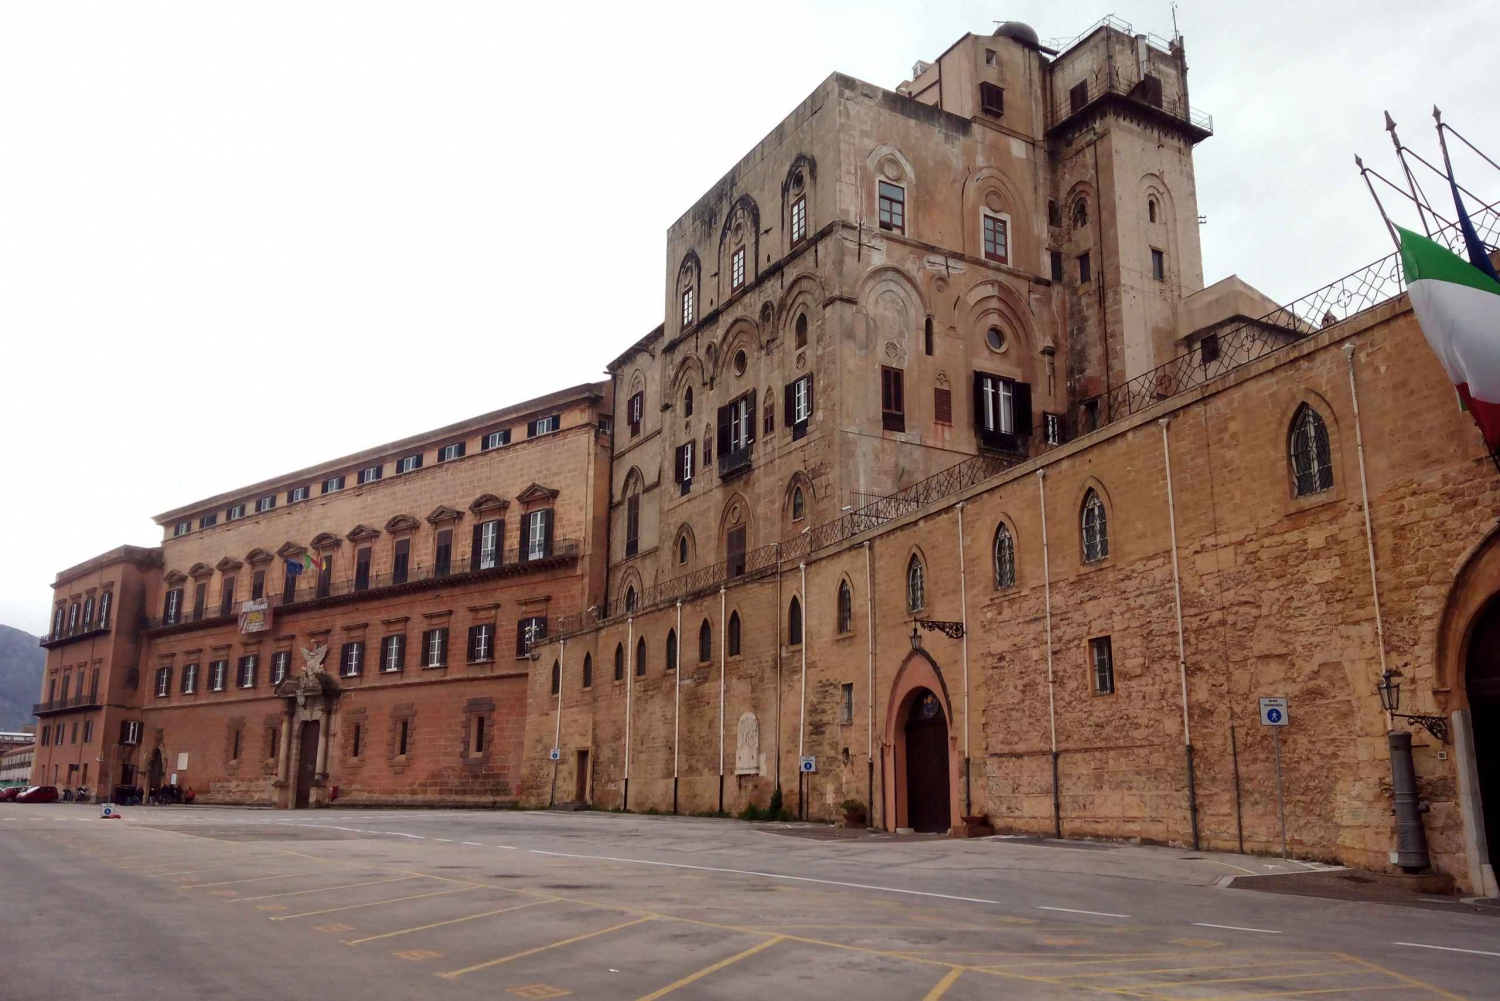 Palermo: Ticket de entrada al Palacio de los Normandos y visita a la azotea de Palermo